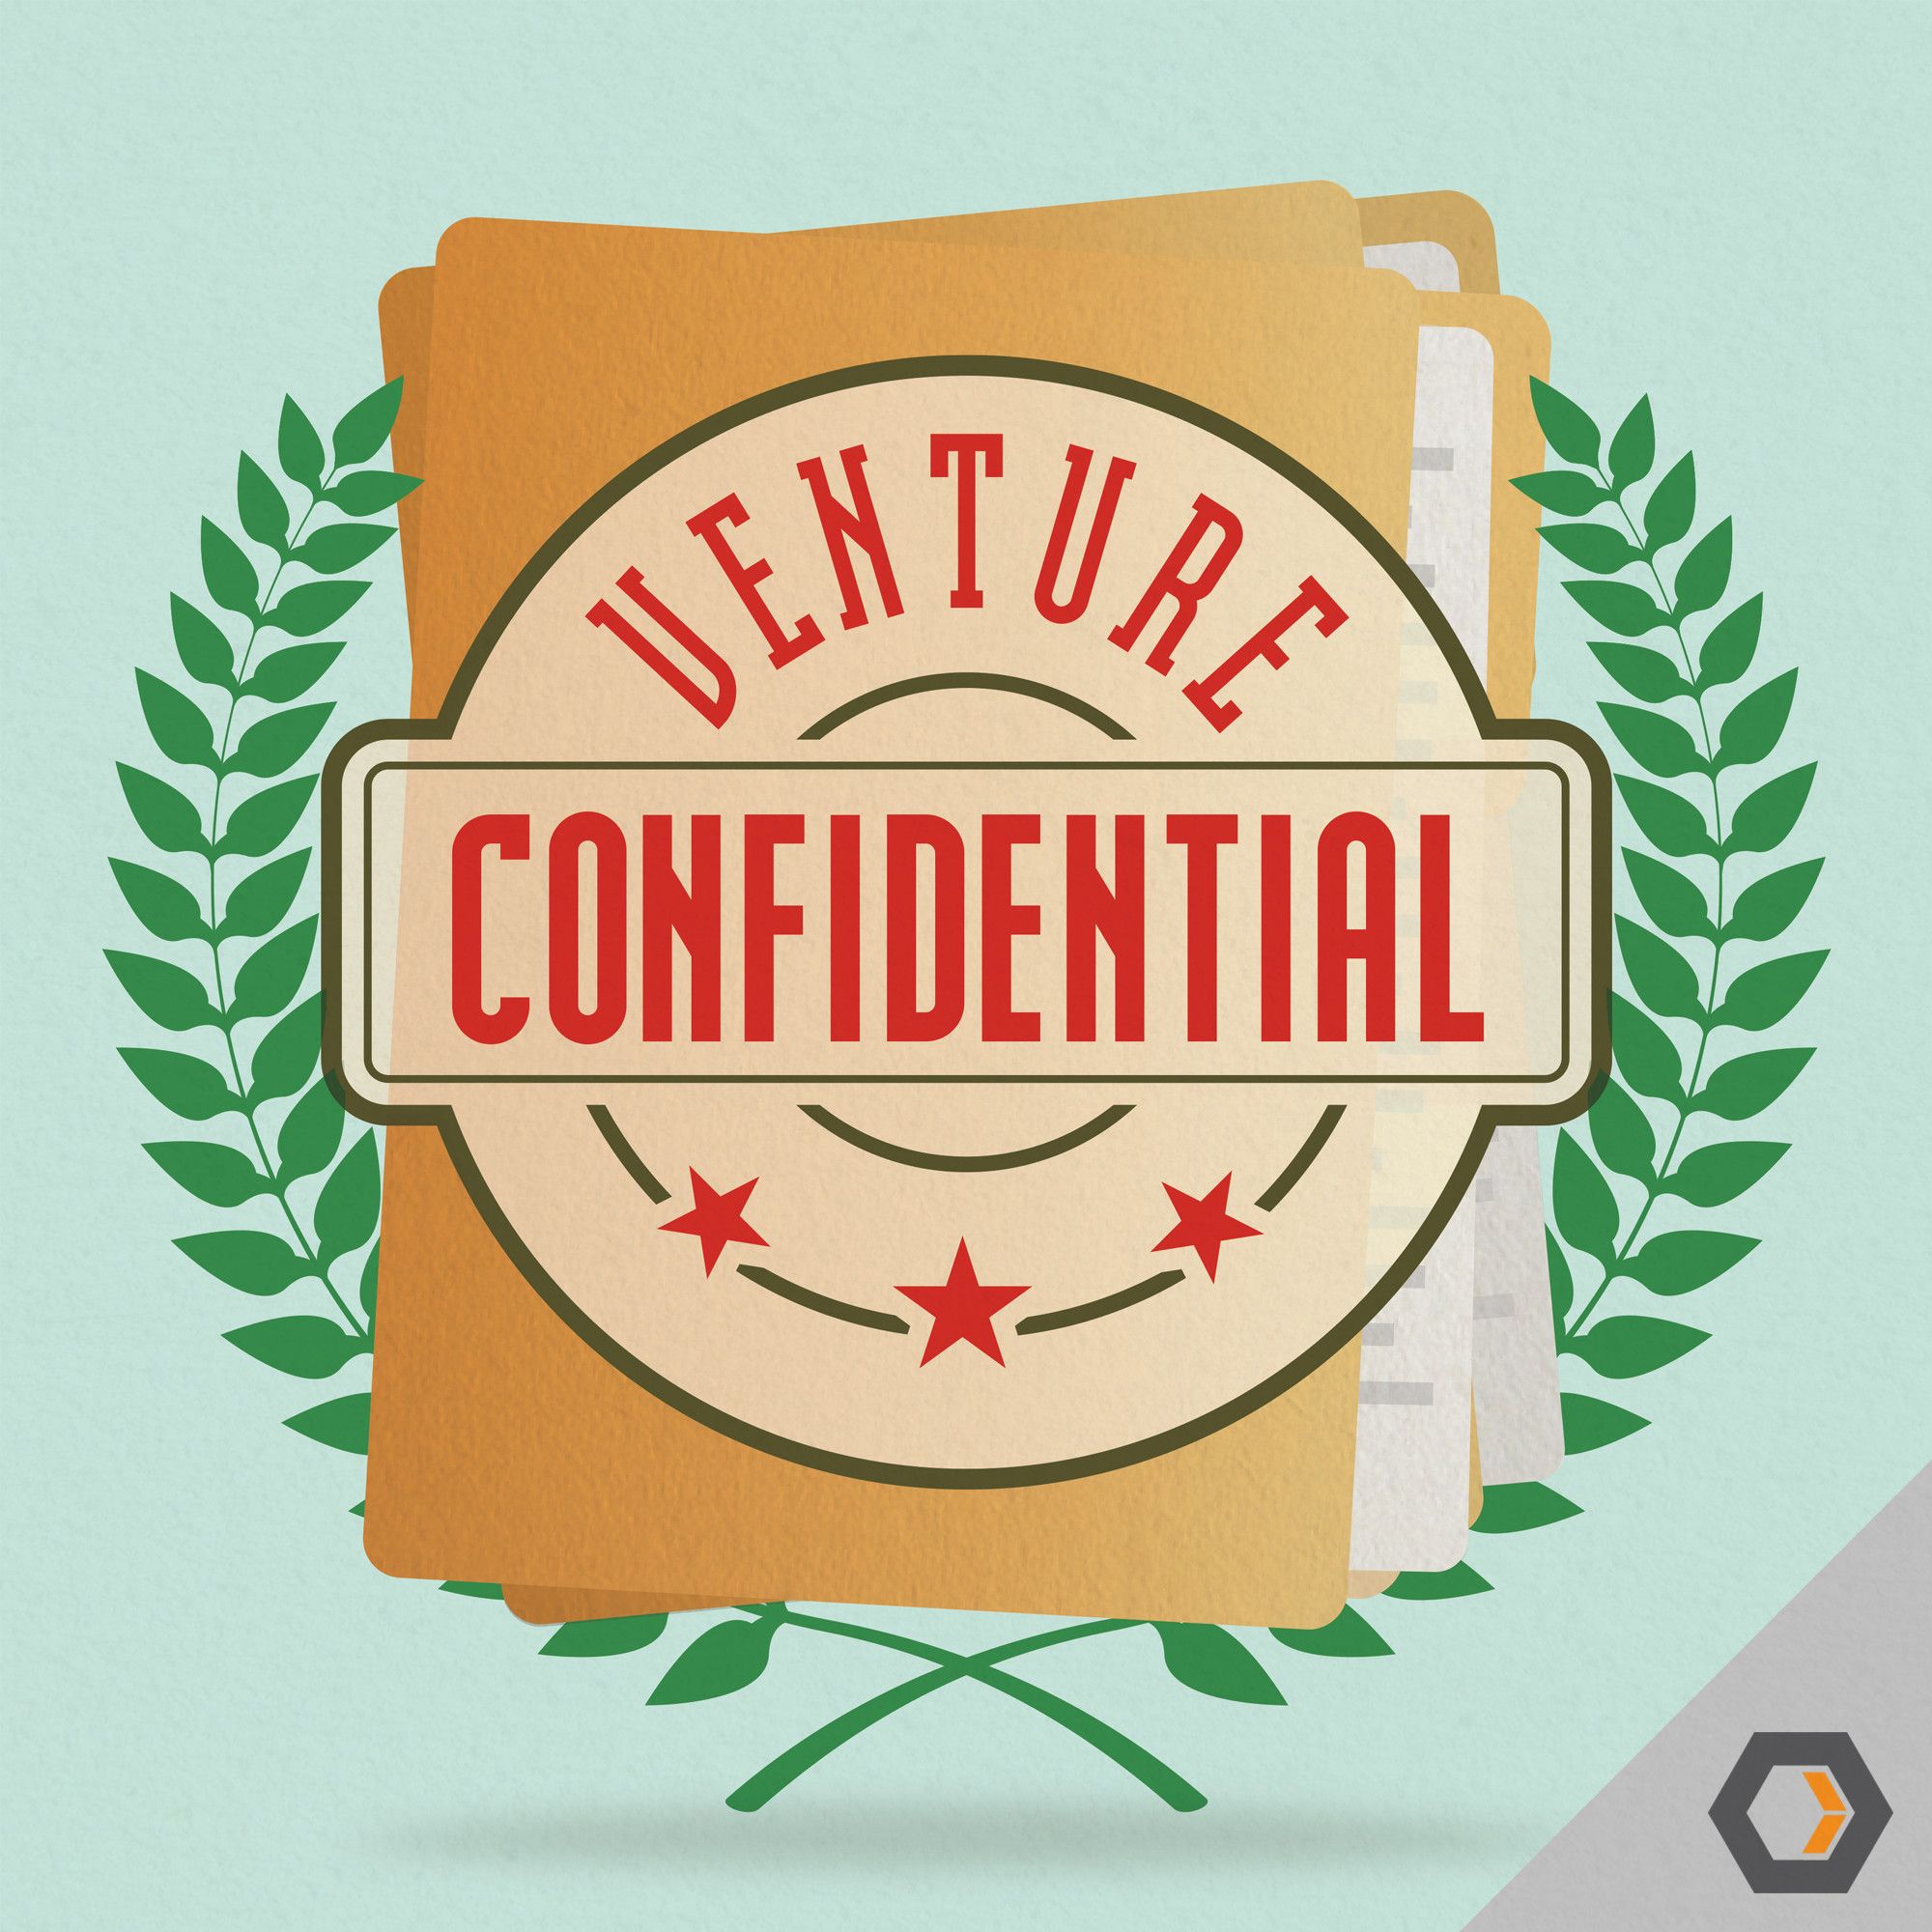 Venture Confidential